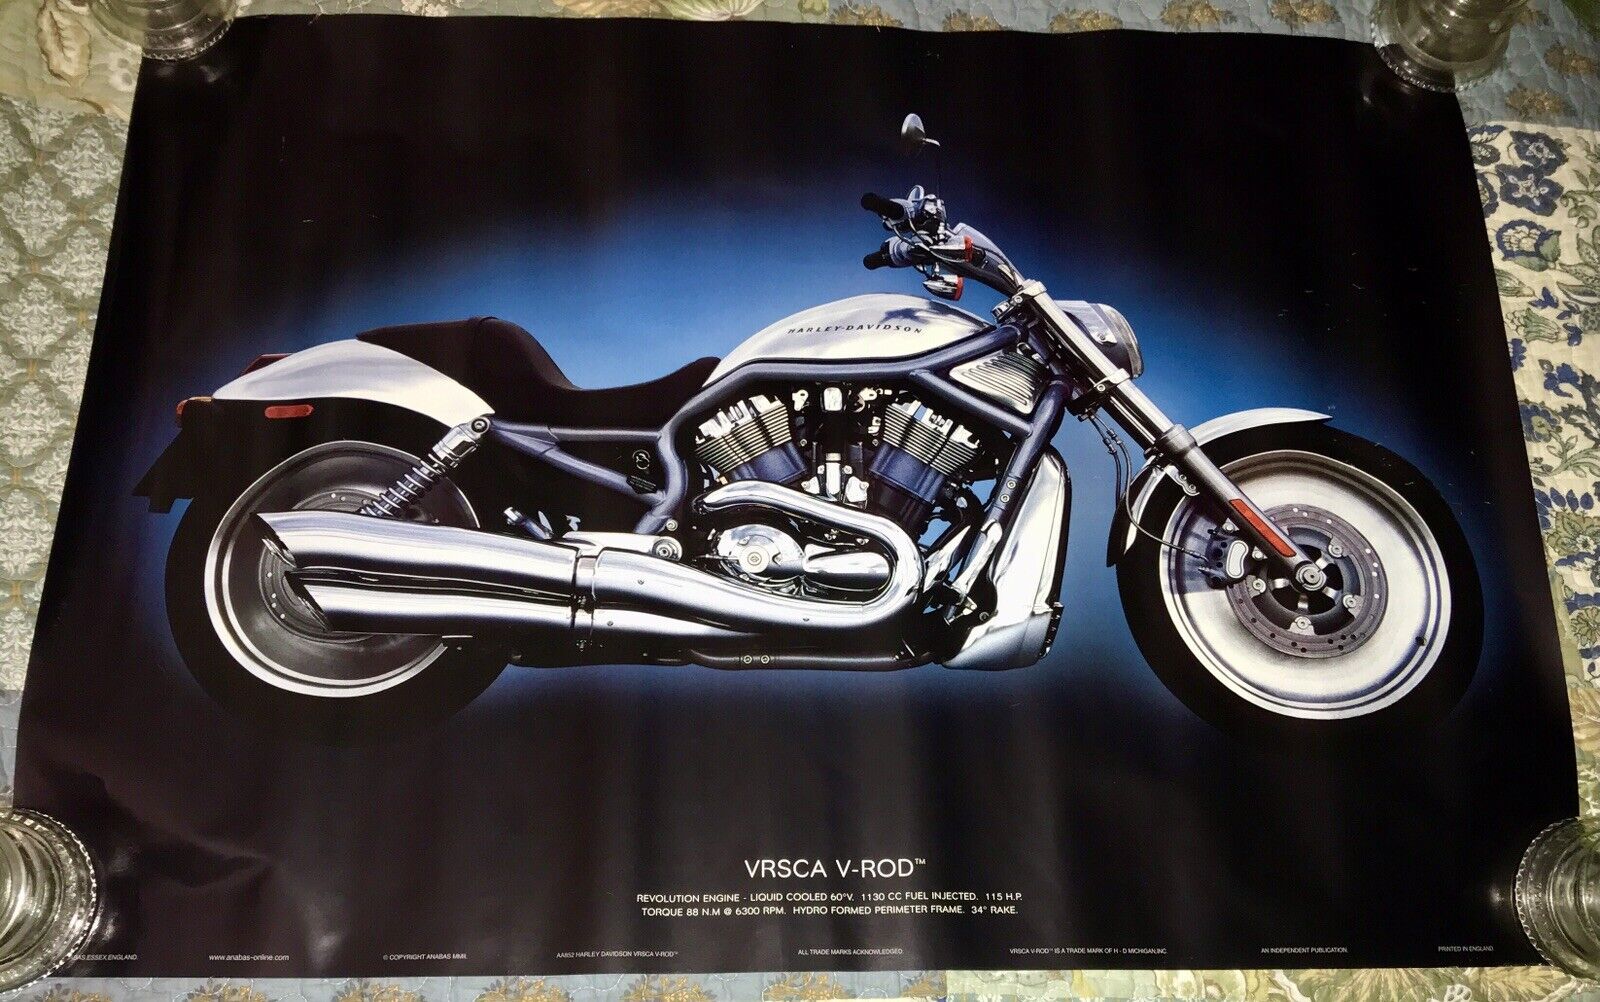 Older Large VRSCA V-ROD Harley-Davidson Motorcycle Poster, 24” x 36”, Nice Cond